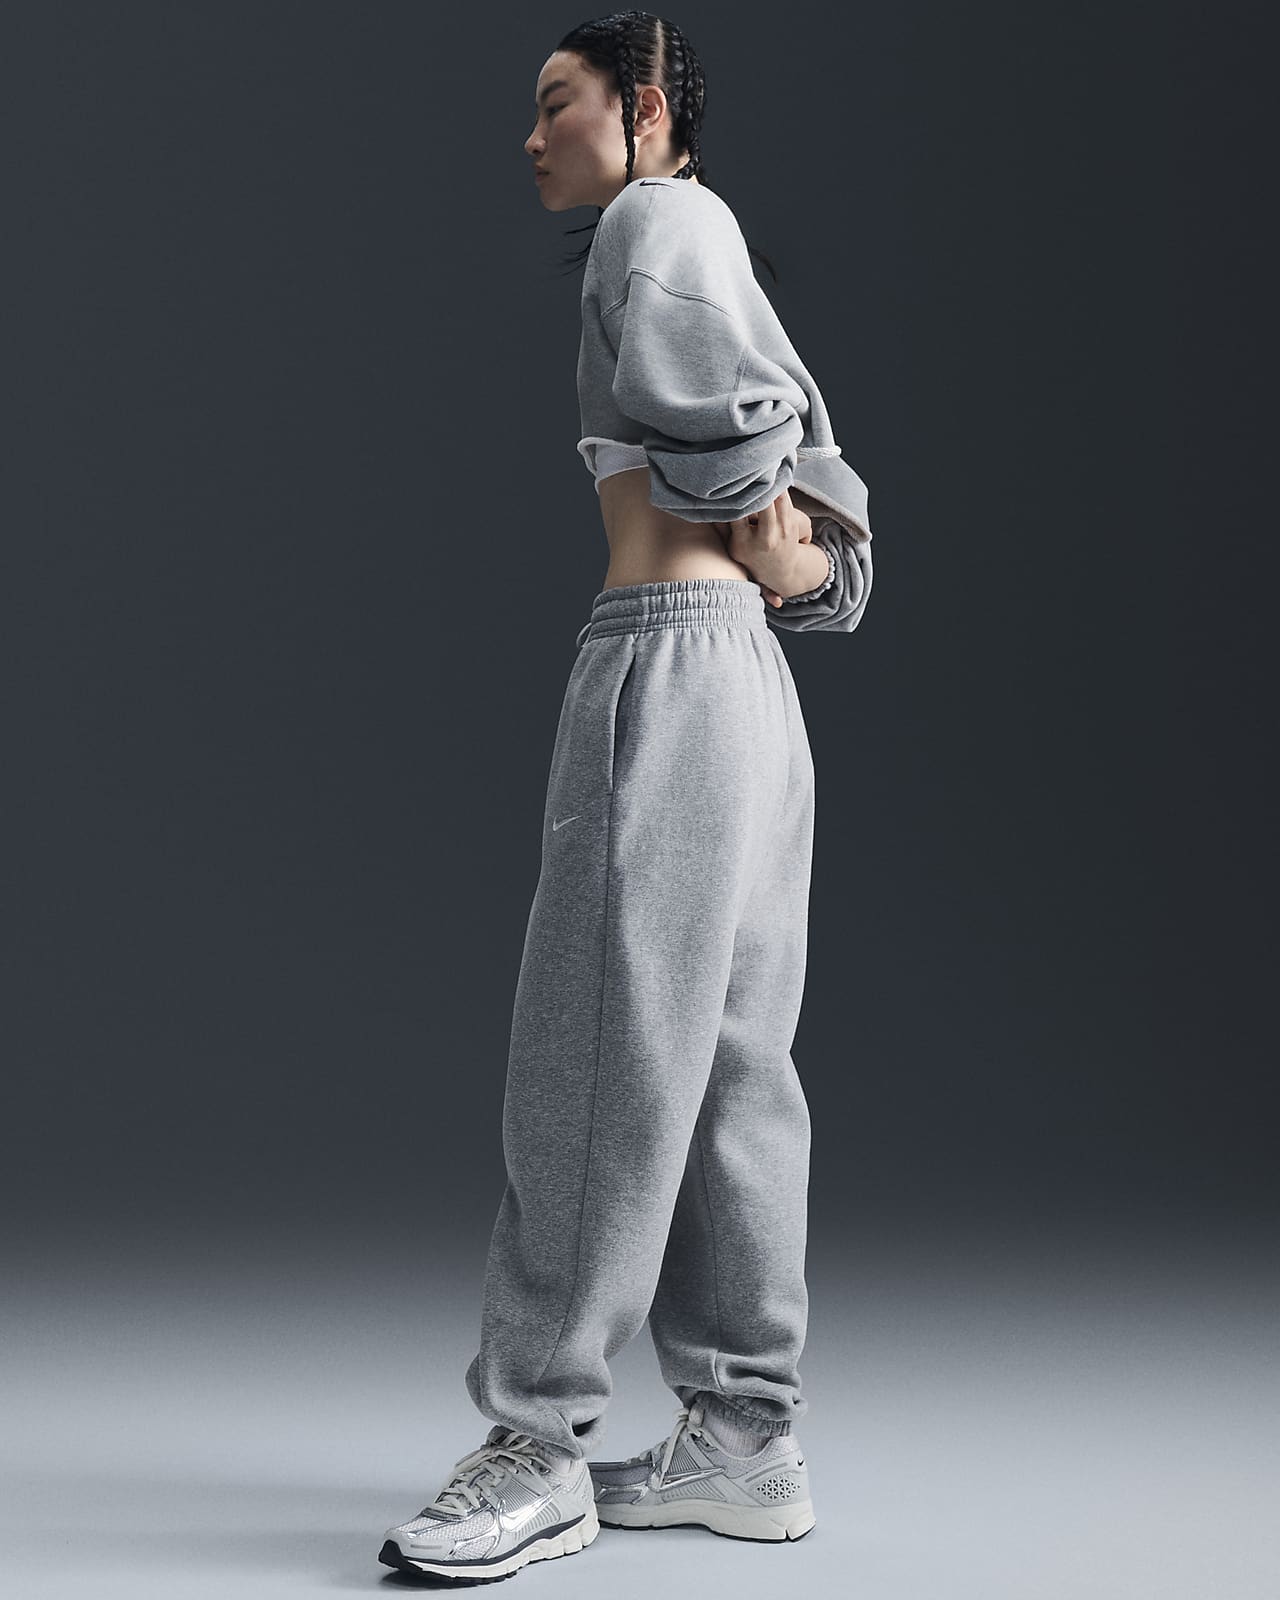 Nike Sportswear Phoenix Fleece Women's High-Waisted Oversized Tracksuit Bottoms